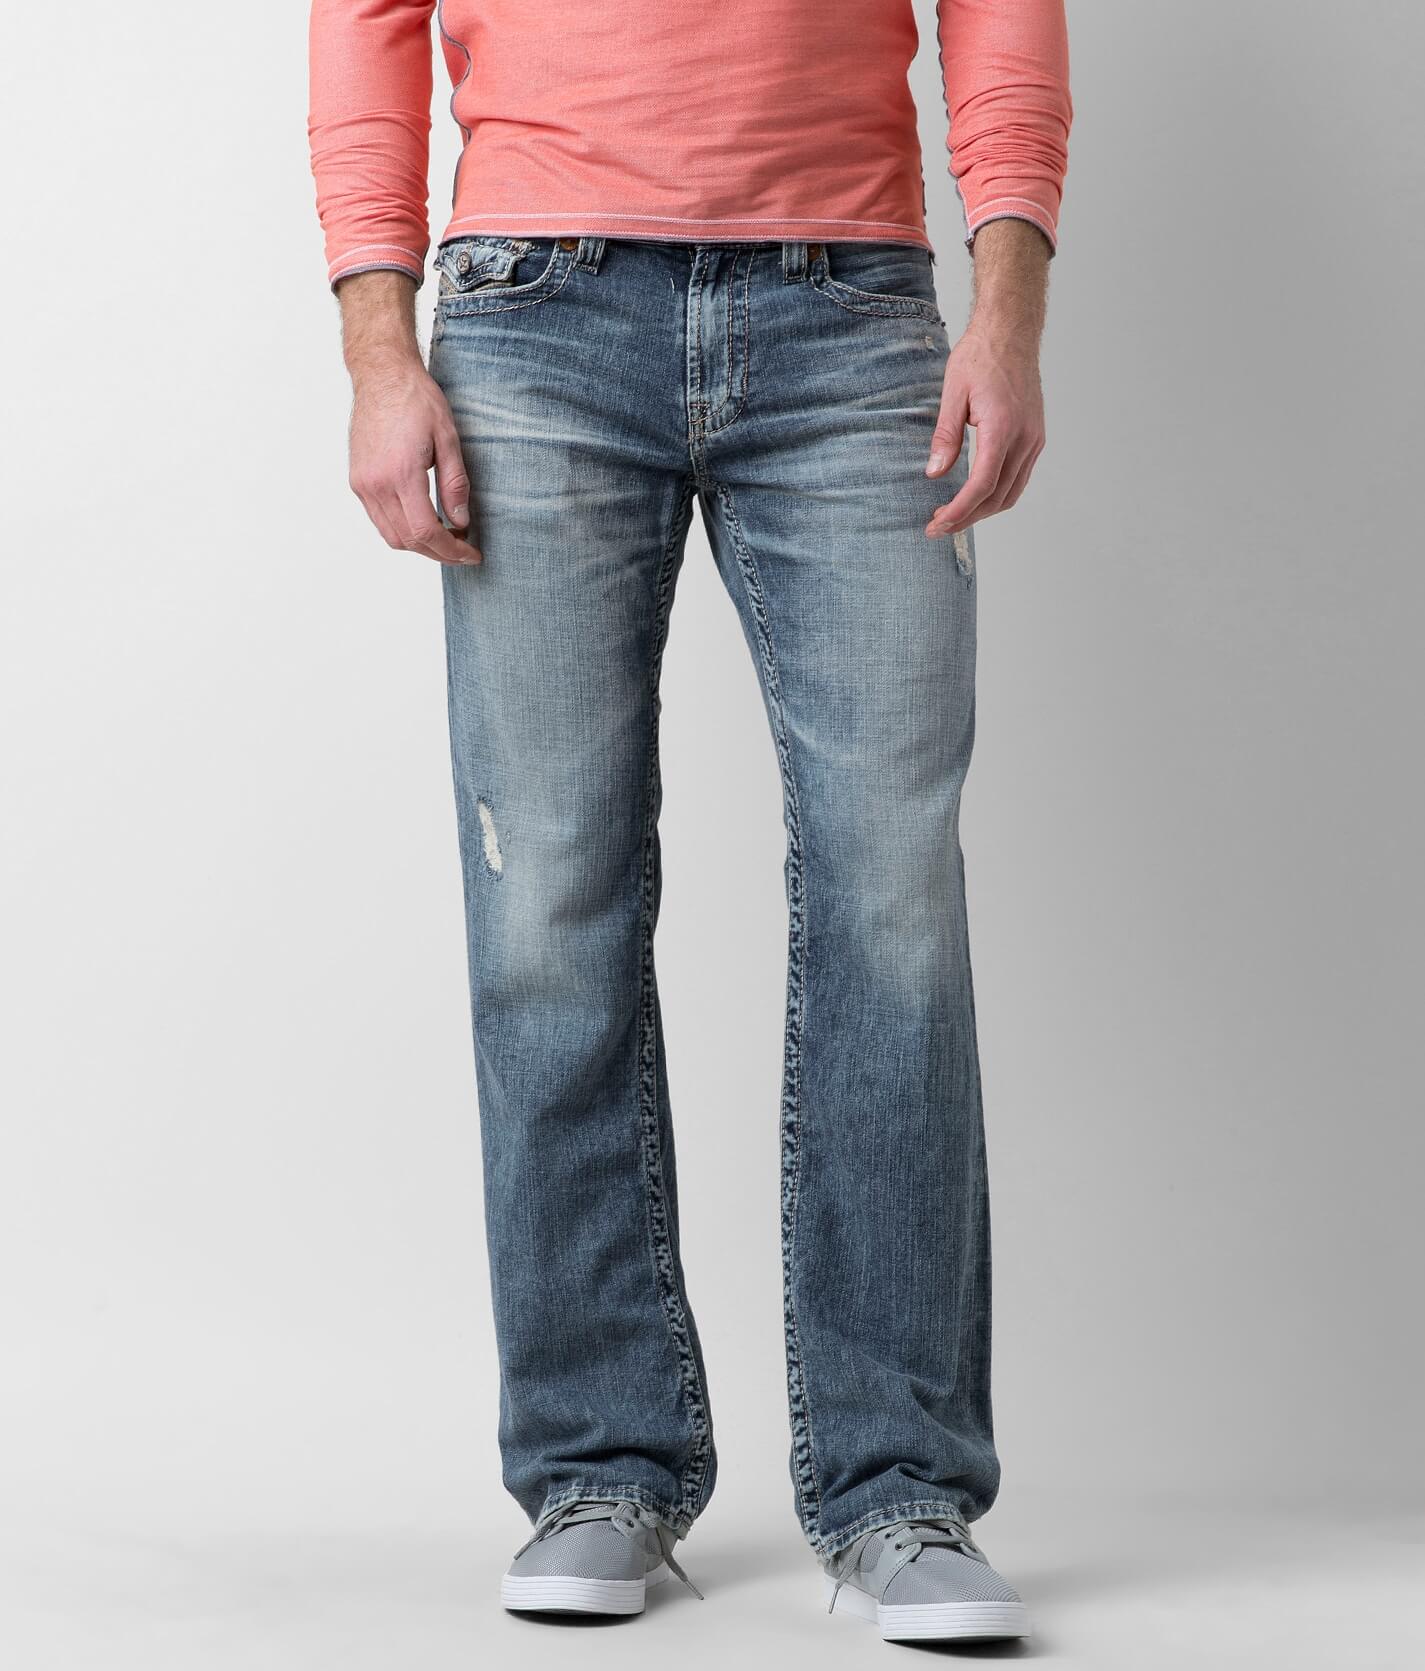 big star jeans online shop